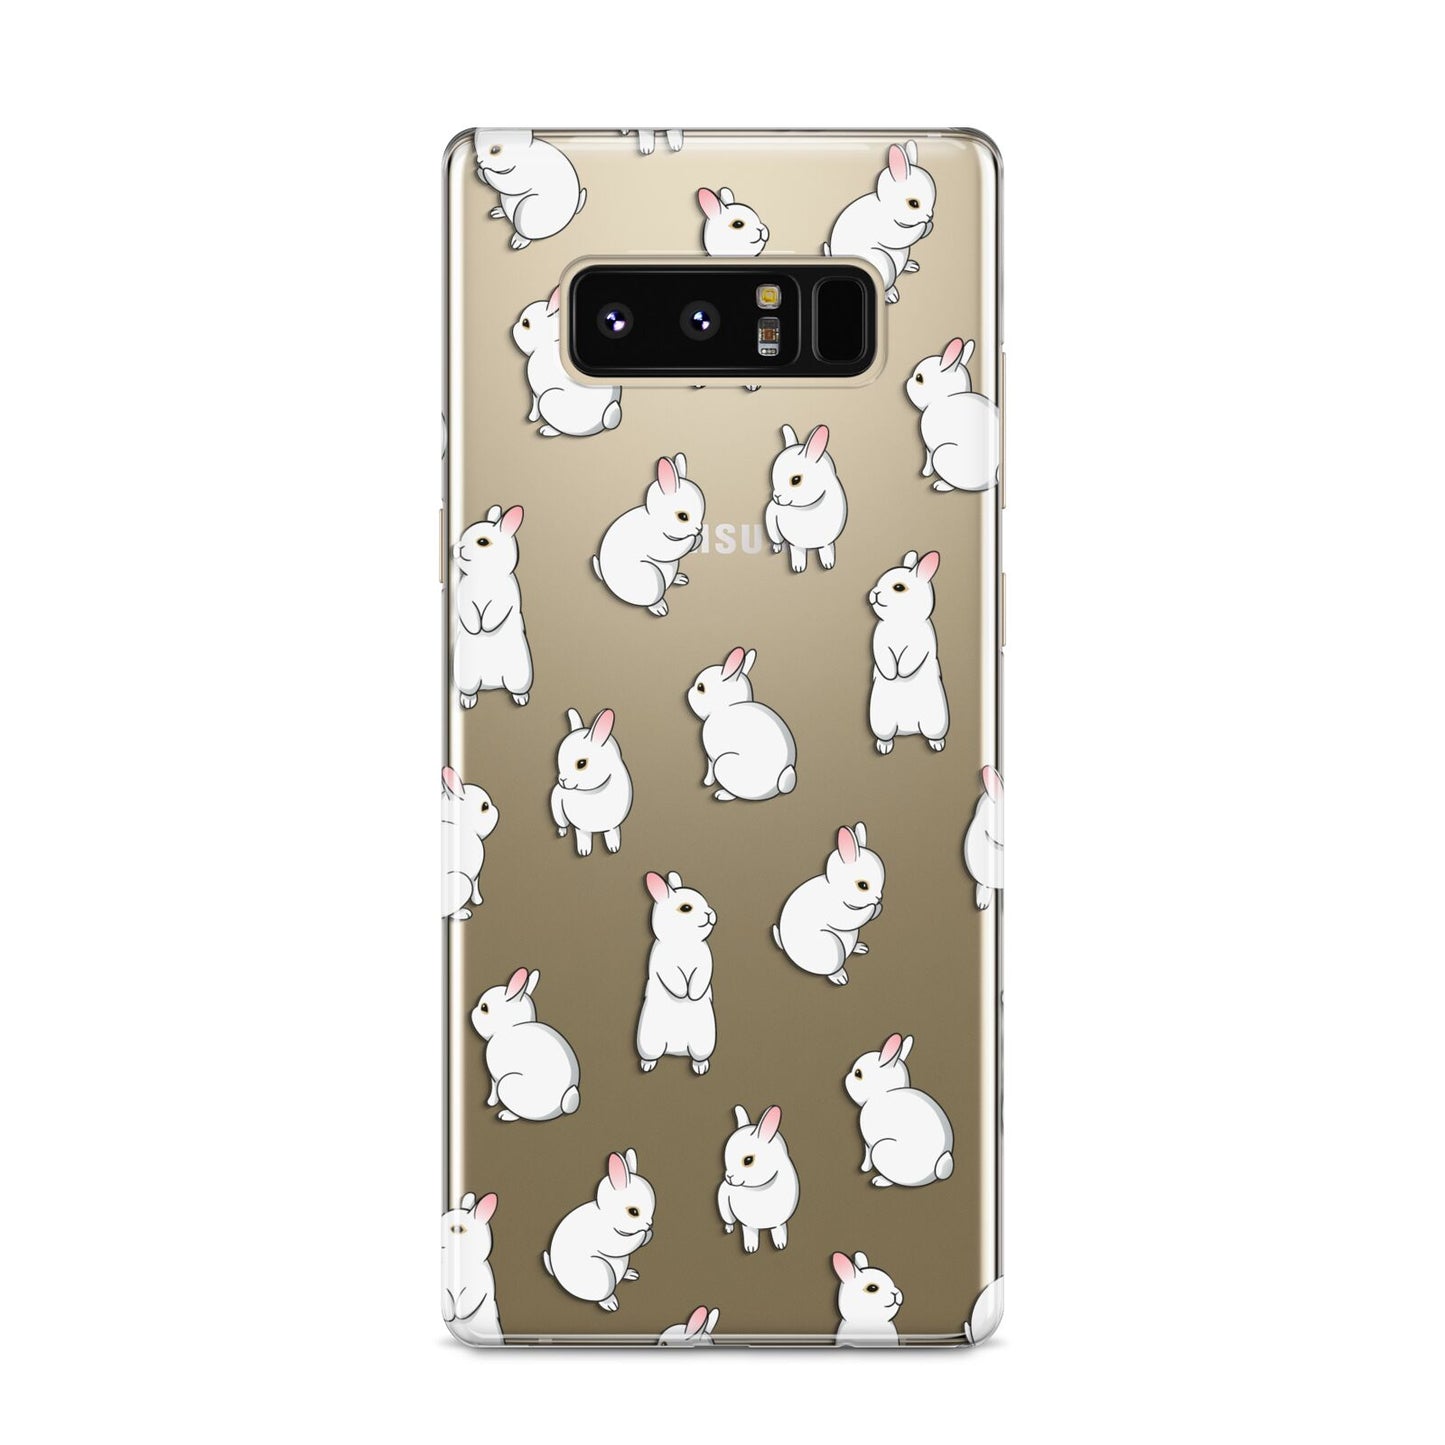 Bunny Rabbit Samsung Galaxy S8 Case